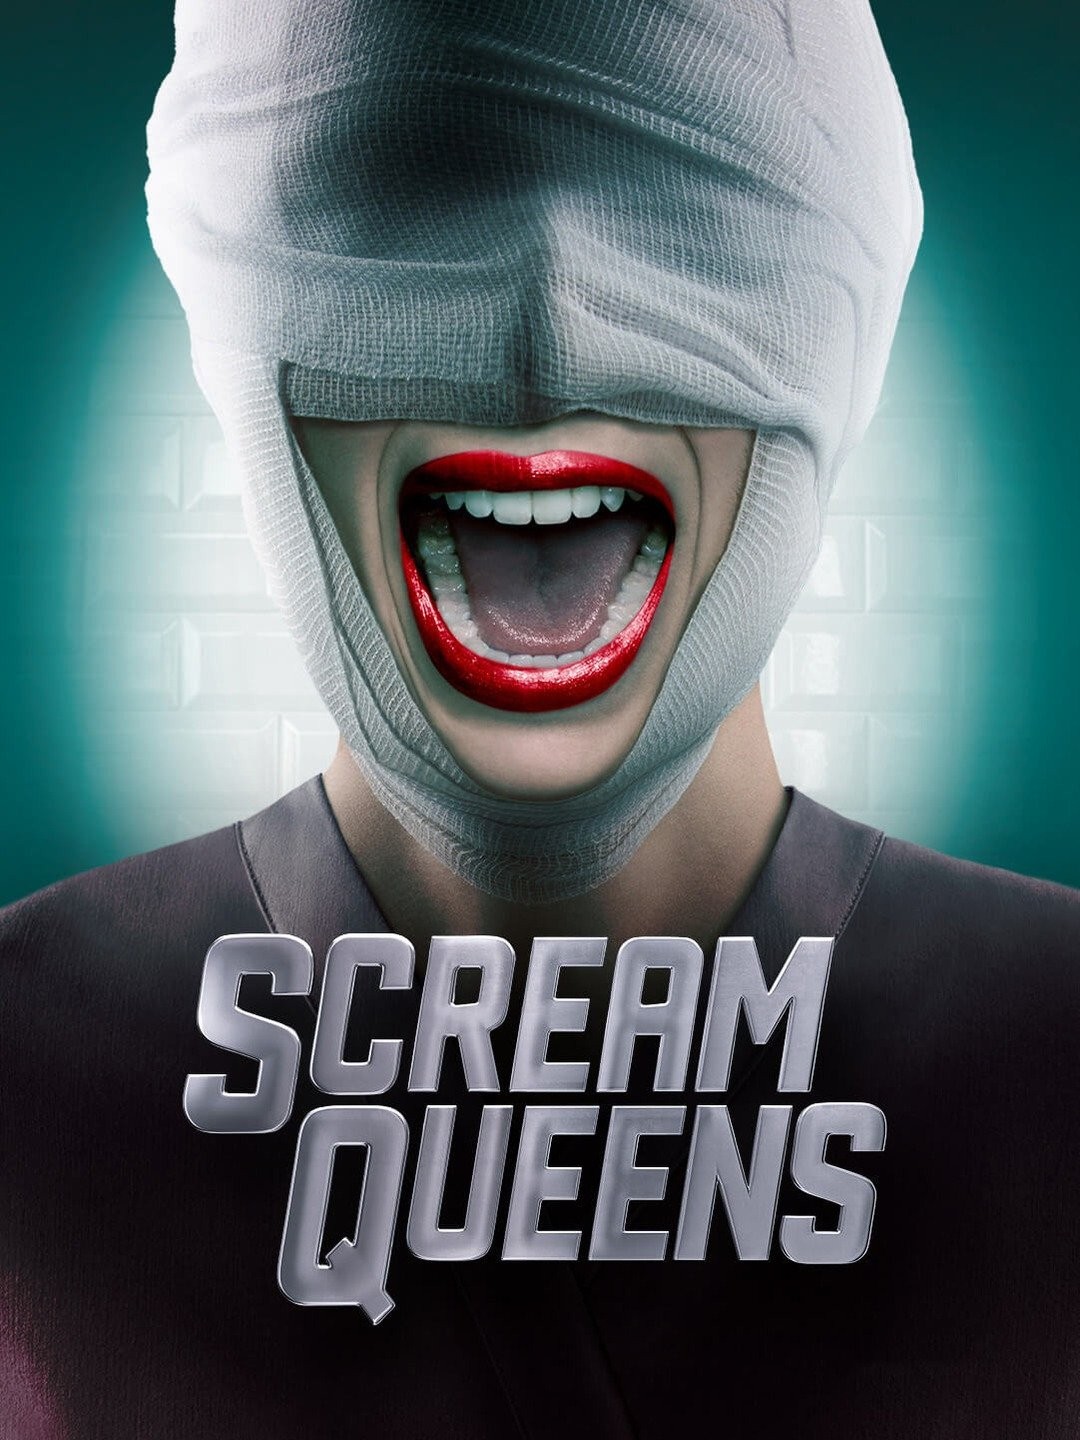 Scream Queens recap: Season 2, Episode 6